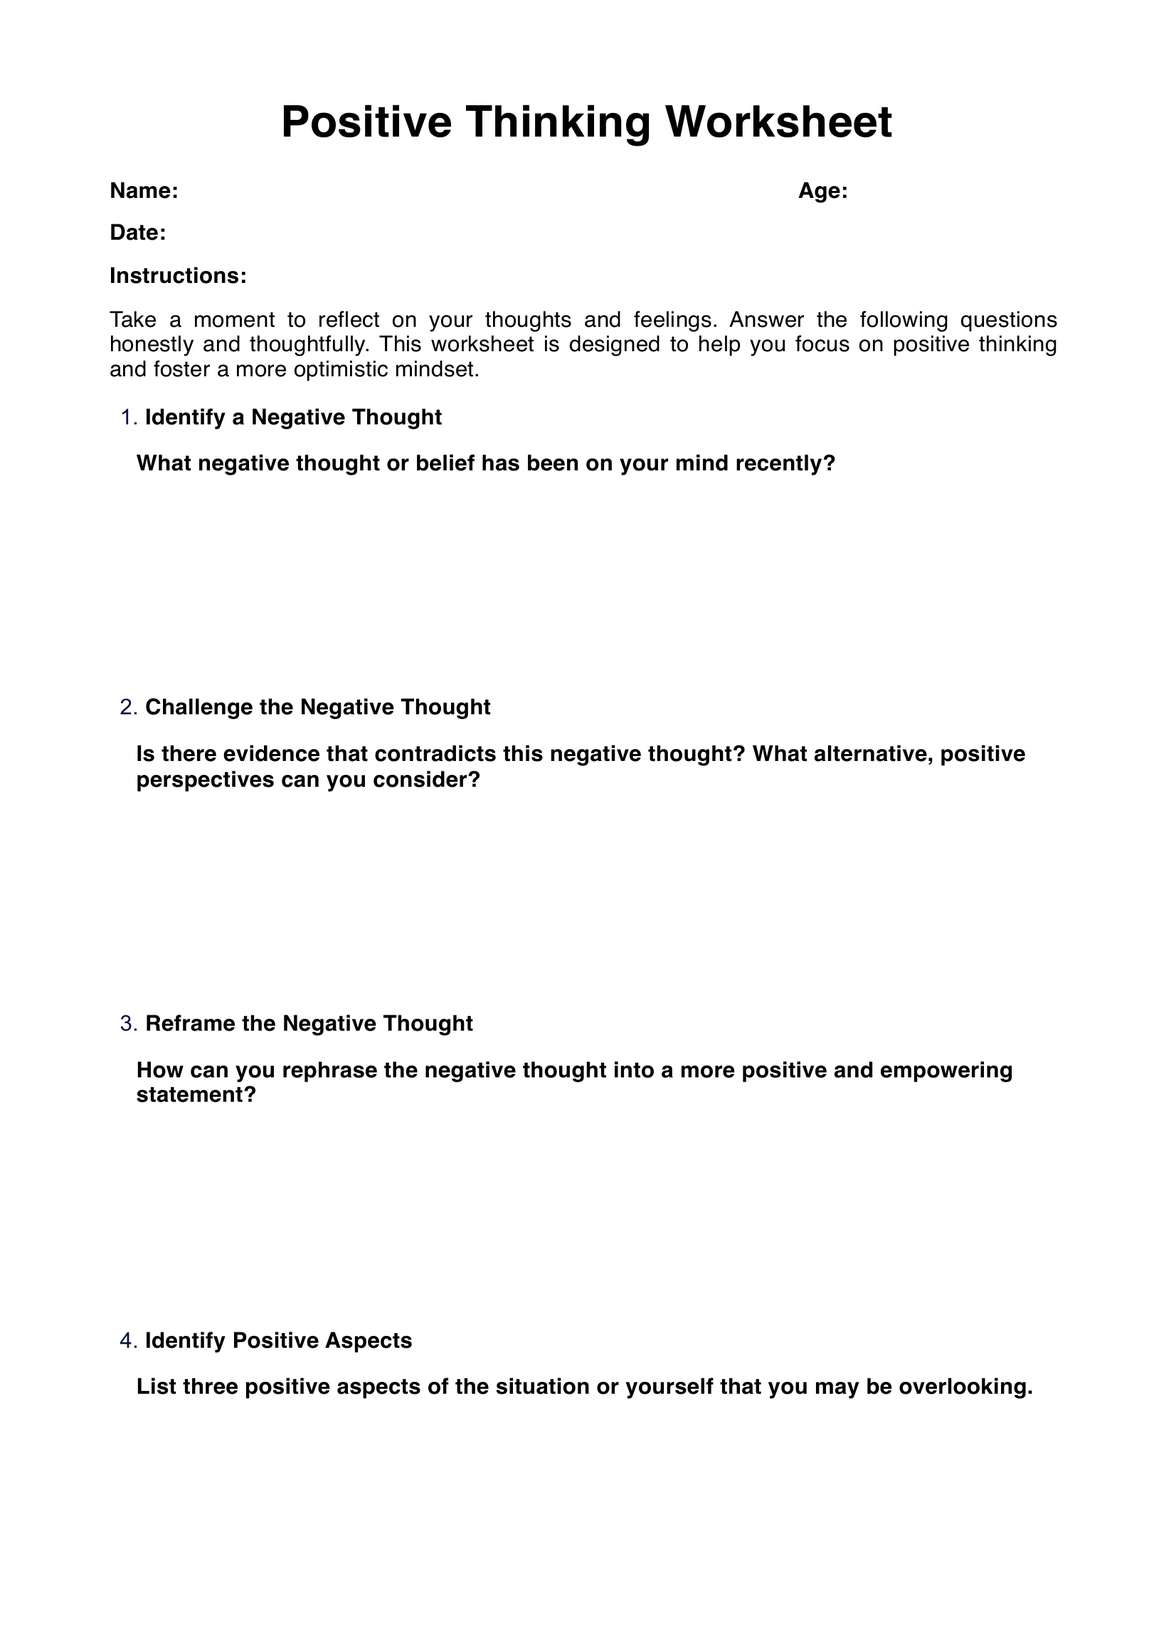 Positive Thinking Worksheet PDF PDF Example